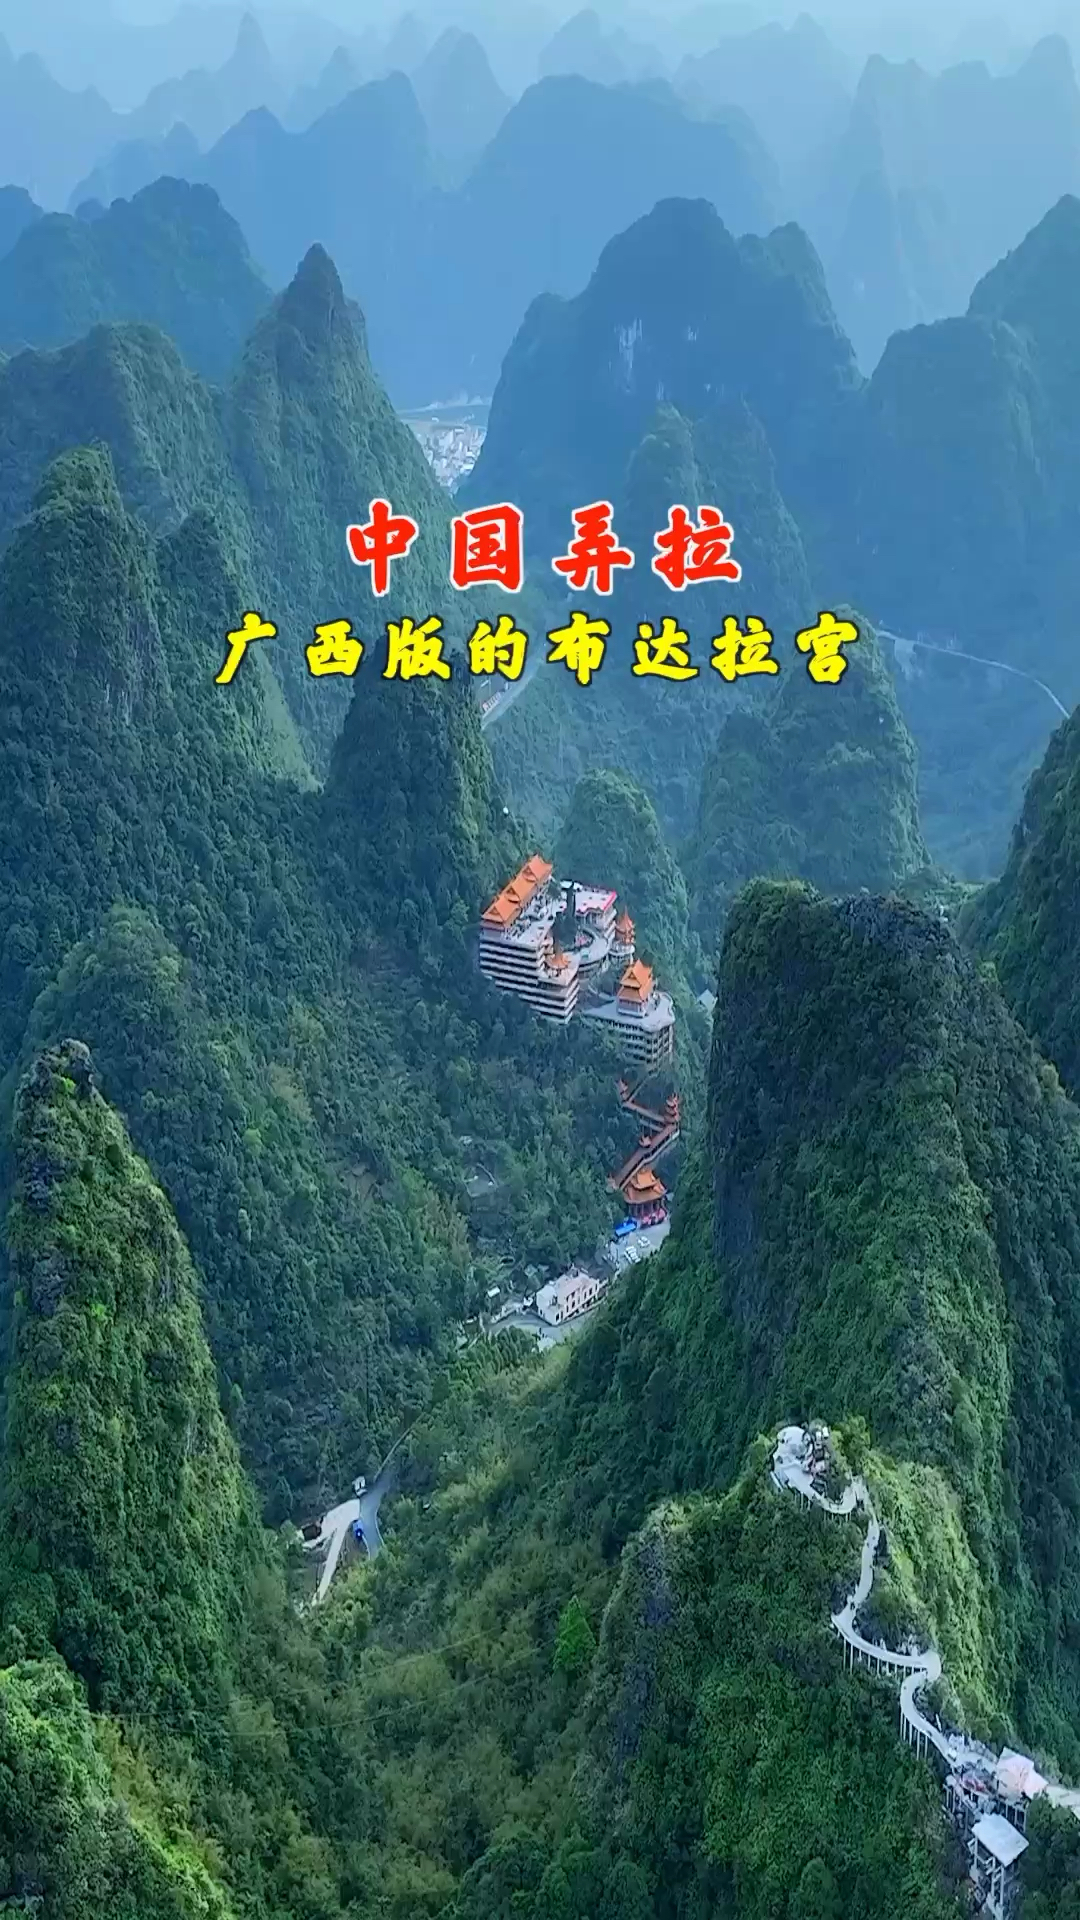 中国弄拉-广西版的布达拉宫，十万大山里的“山旮旯”。传说中的分手圣地！你们信吗？